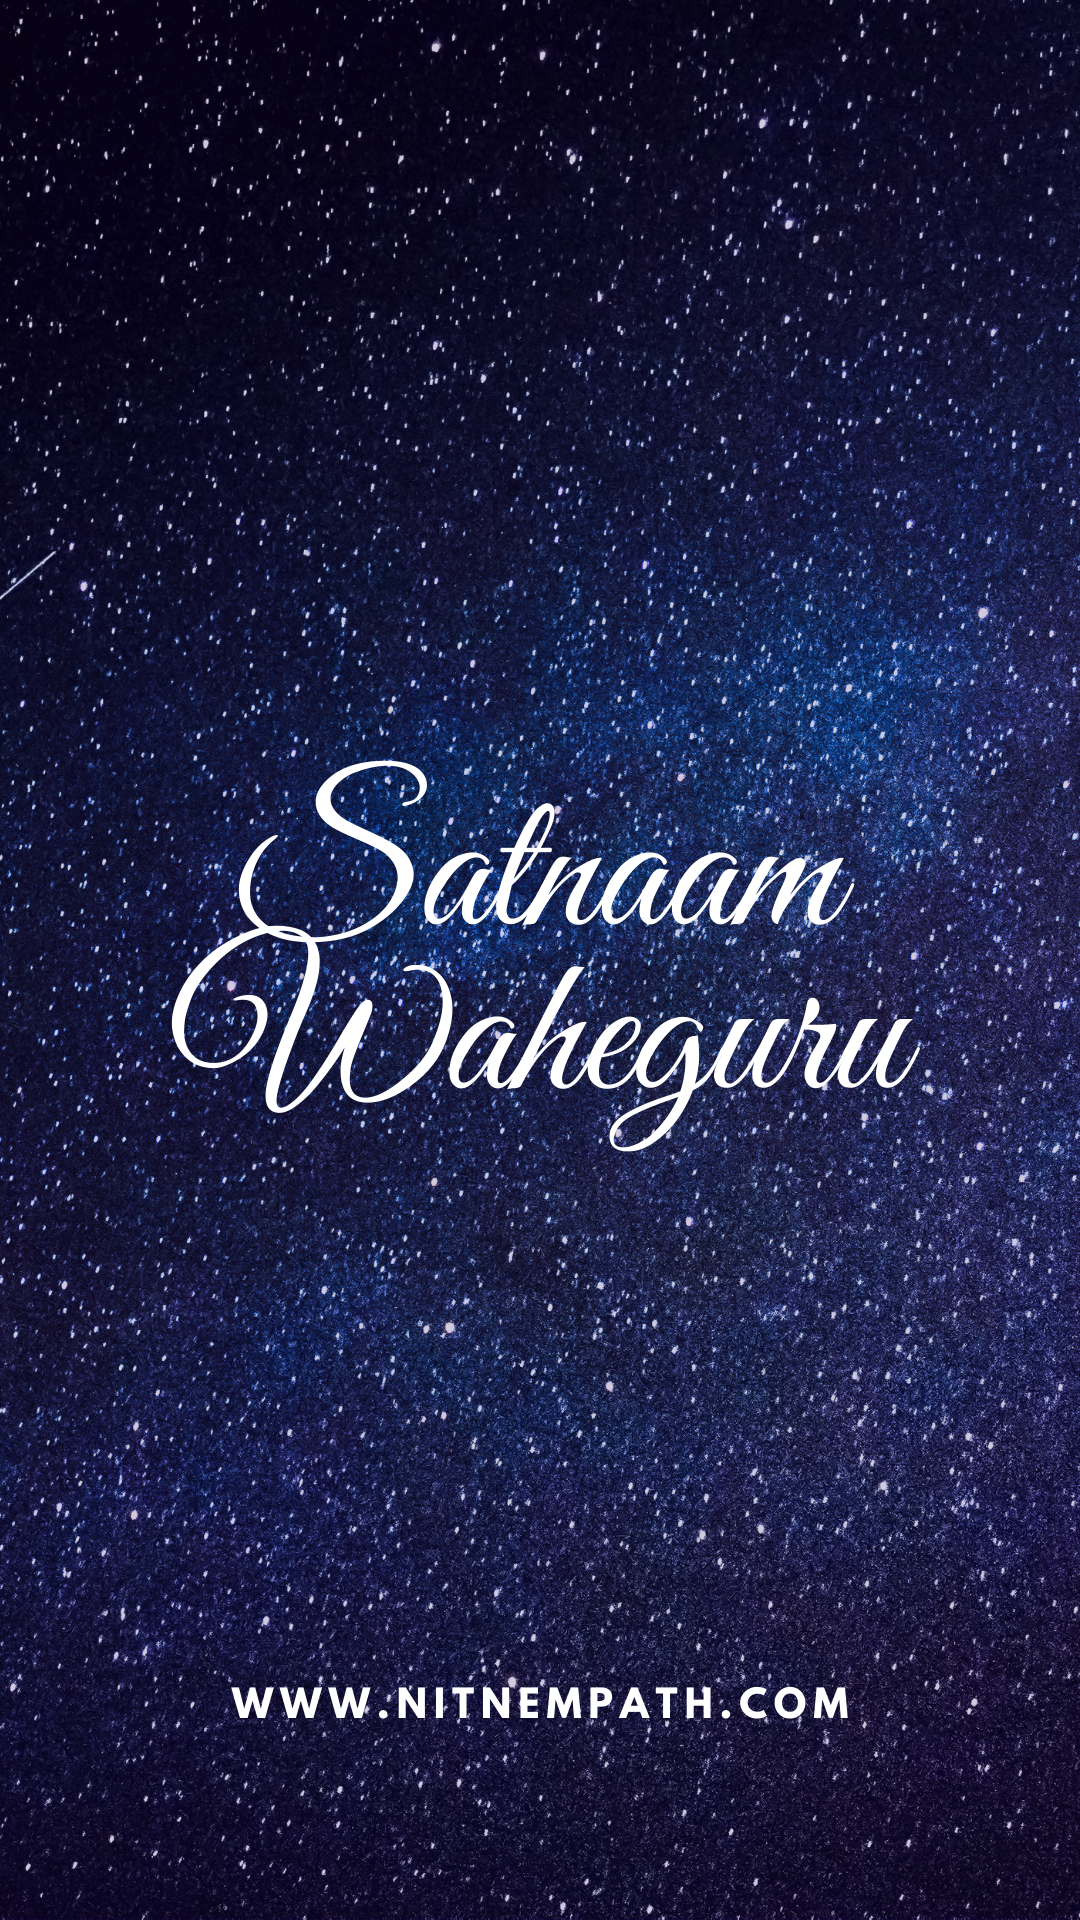 Satnaam Waheguru - Waheguru Wallpapers HD